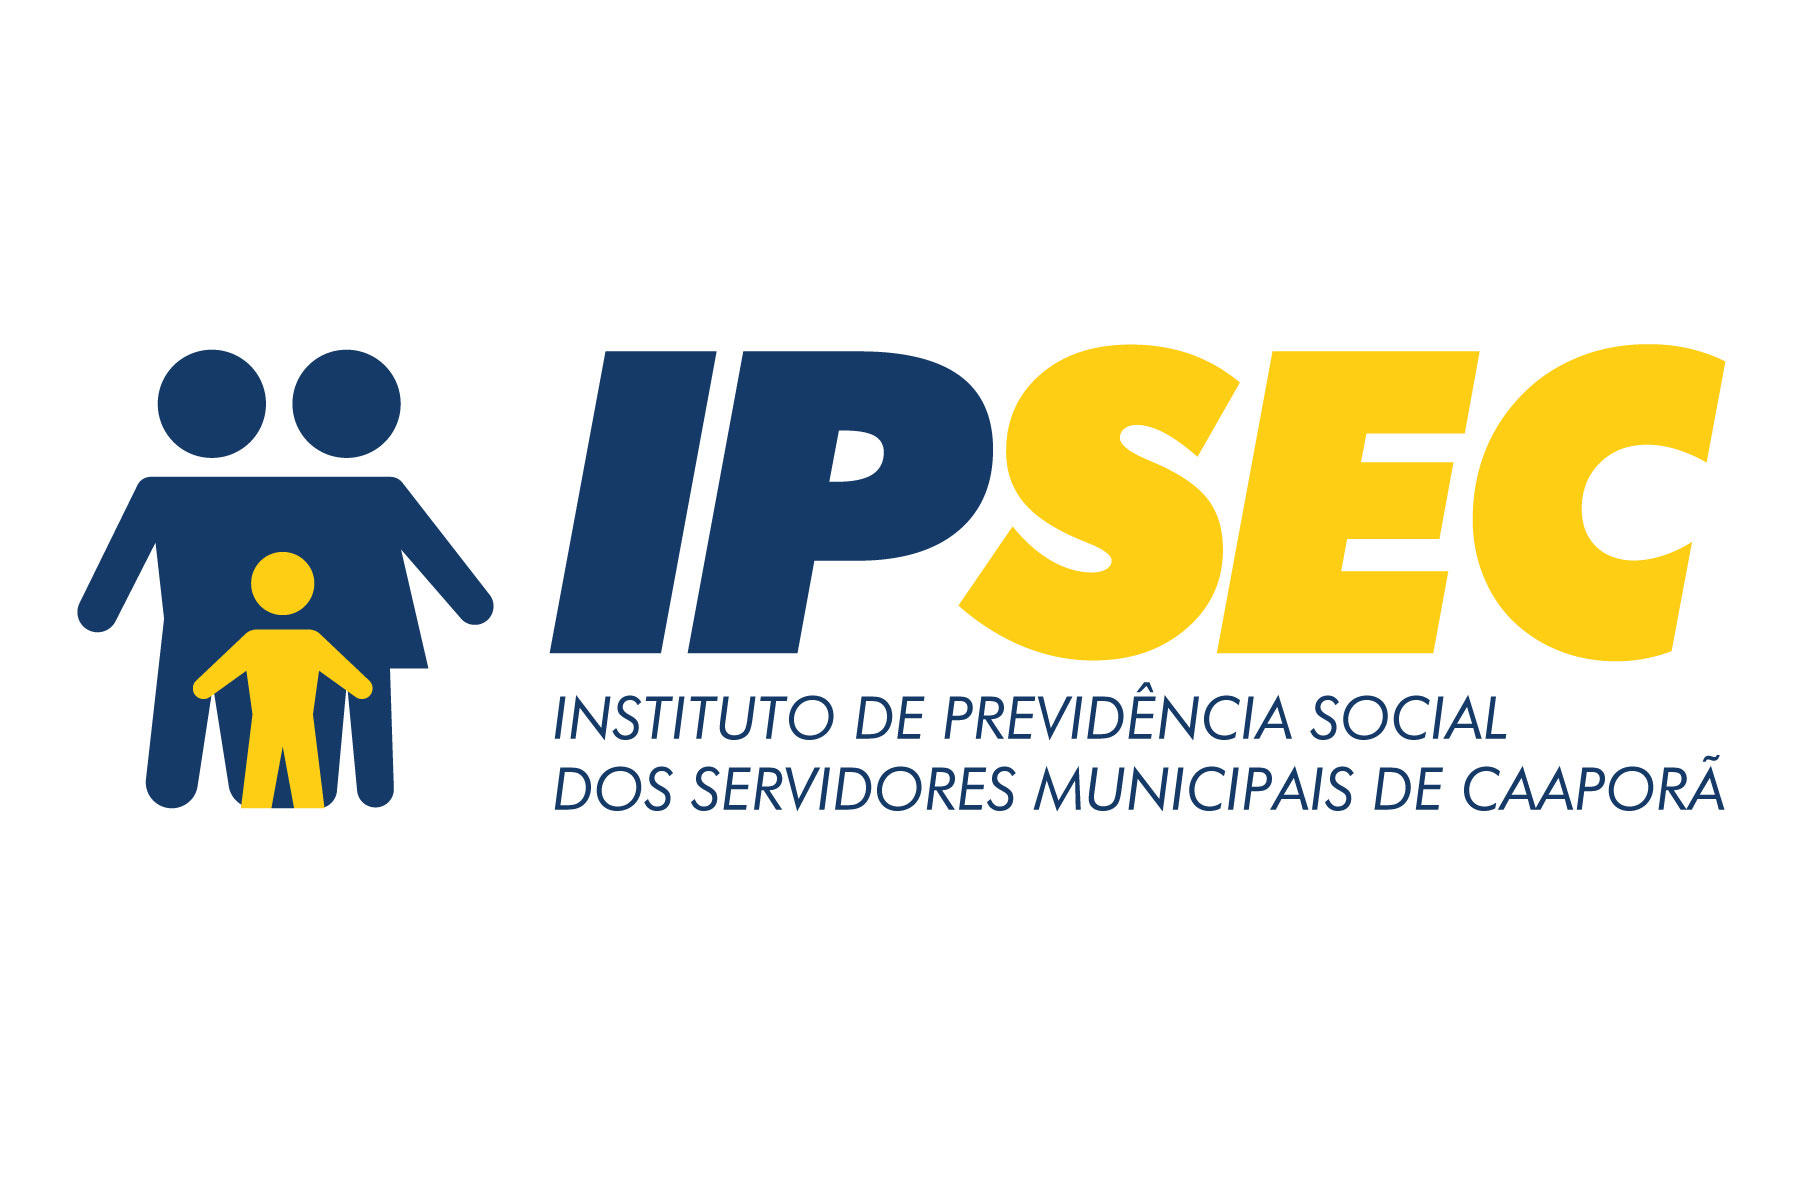 Instituto de Previdência Social dos Servidores Municipais de Caaporã - IPSEC